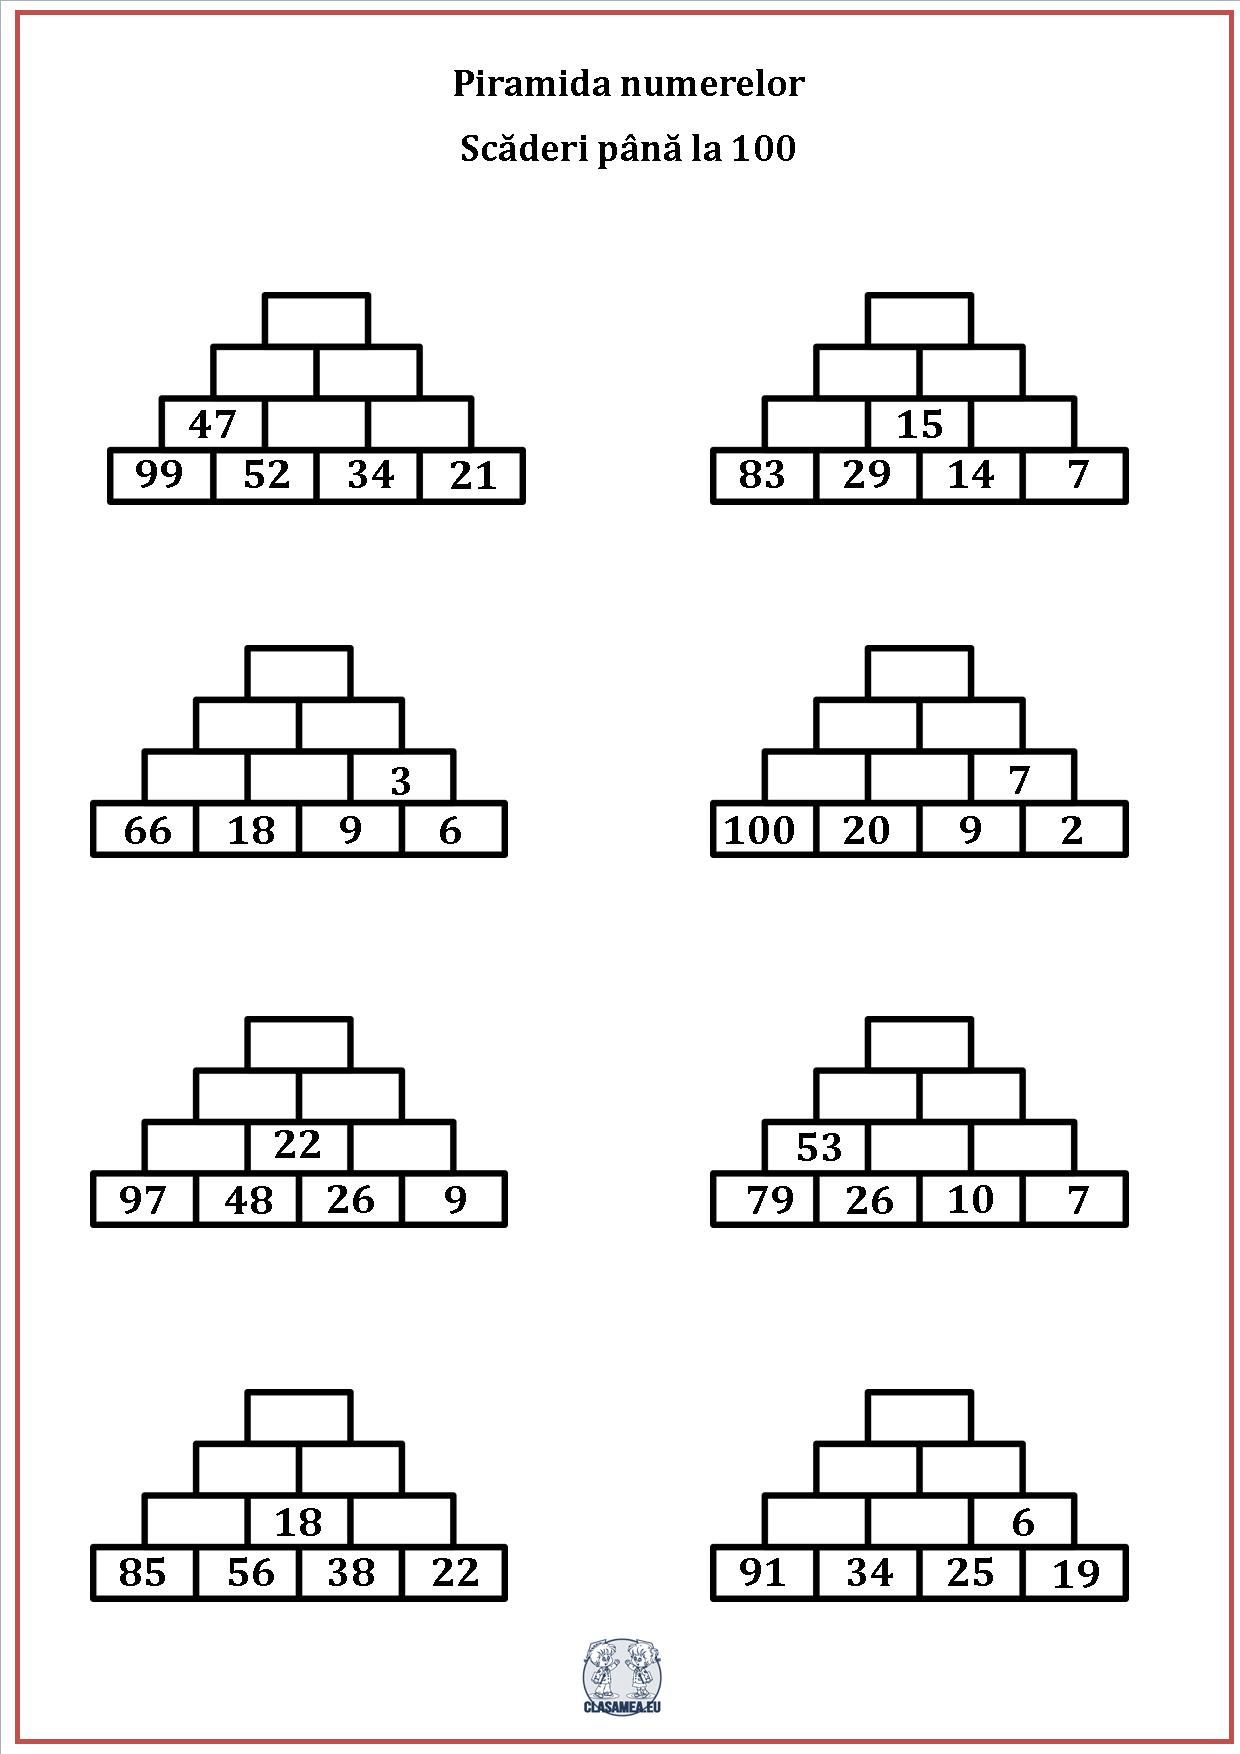 Piramida numerelor - Scăderi până la 100